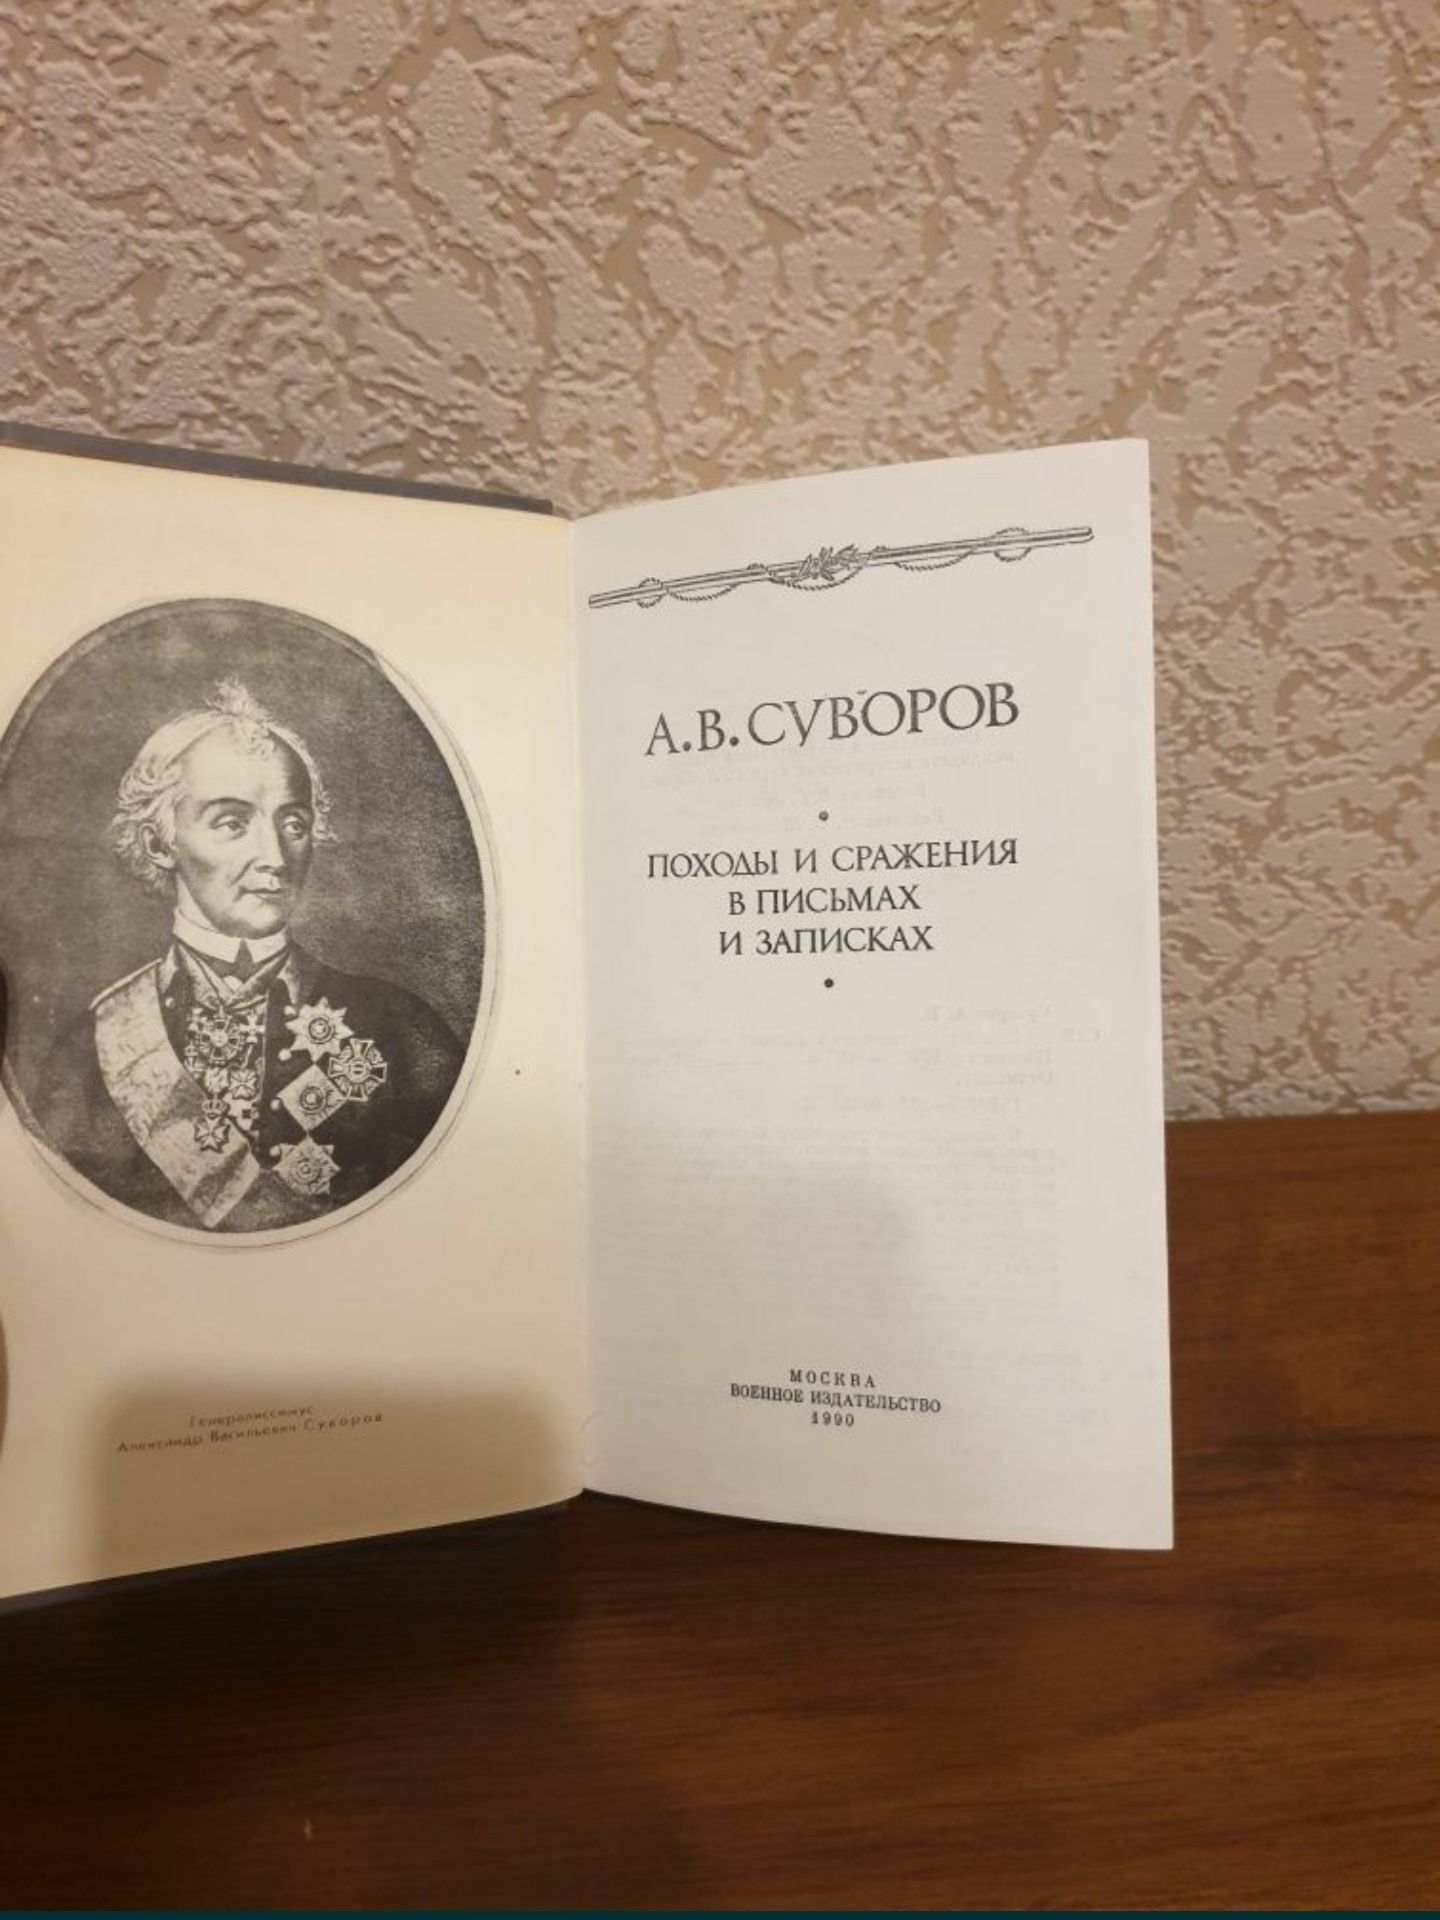 "Бородинская панорама" и "Письма Суворова" книги